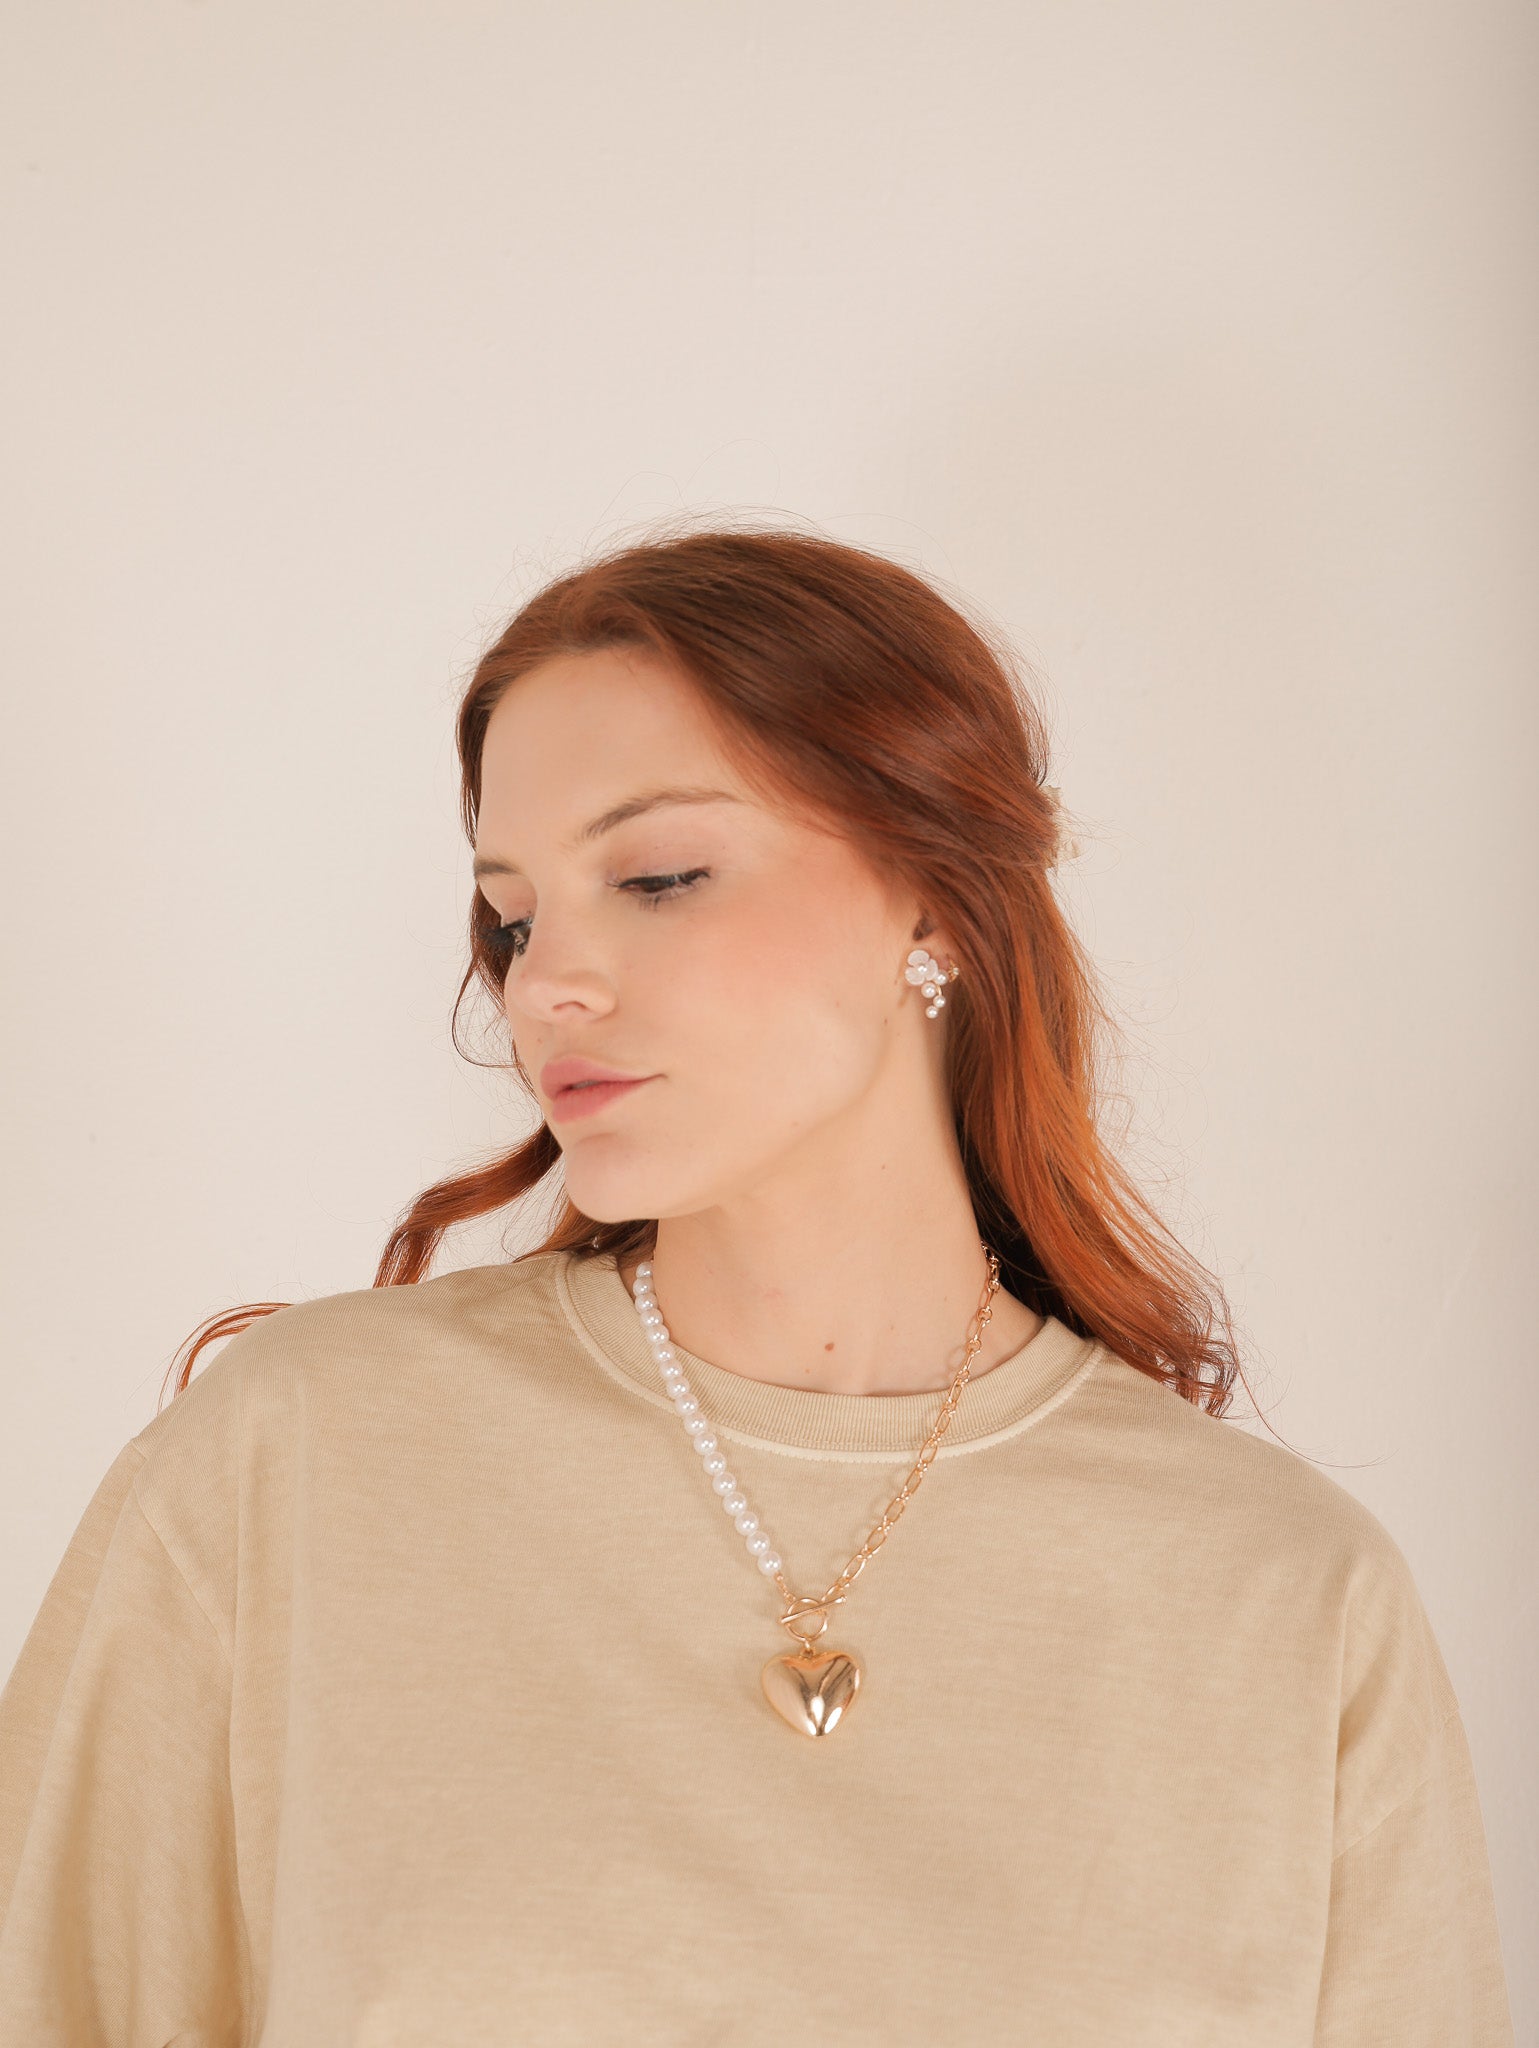 Molly Green - Feelin' In Love Necklace - Jewelry